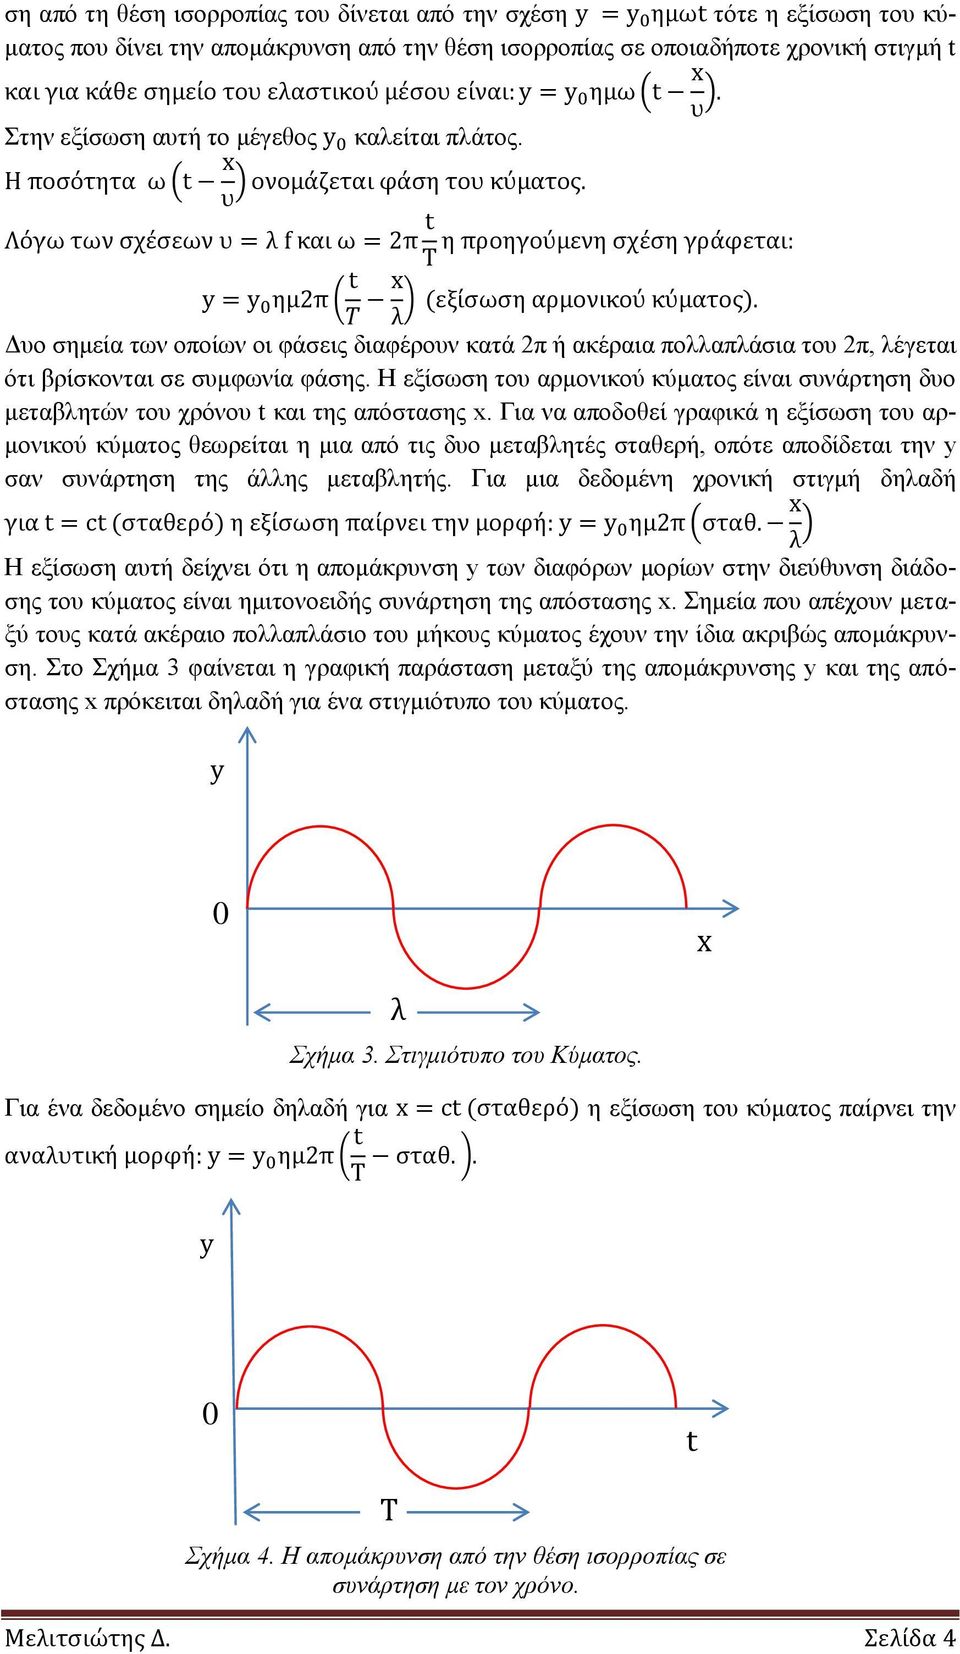 Η εξίσωση του αρμονικού κύματος είναι συνάρτηση δυο μεταβλητών του χρόνου t και της απόστασης x.